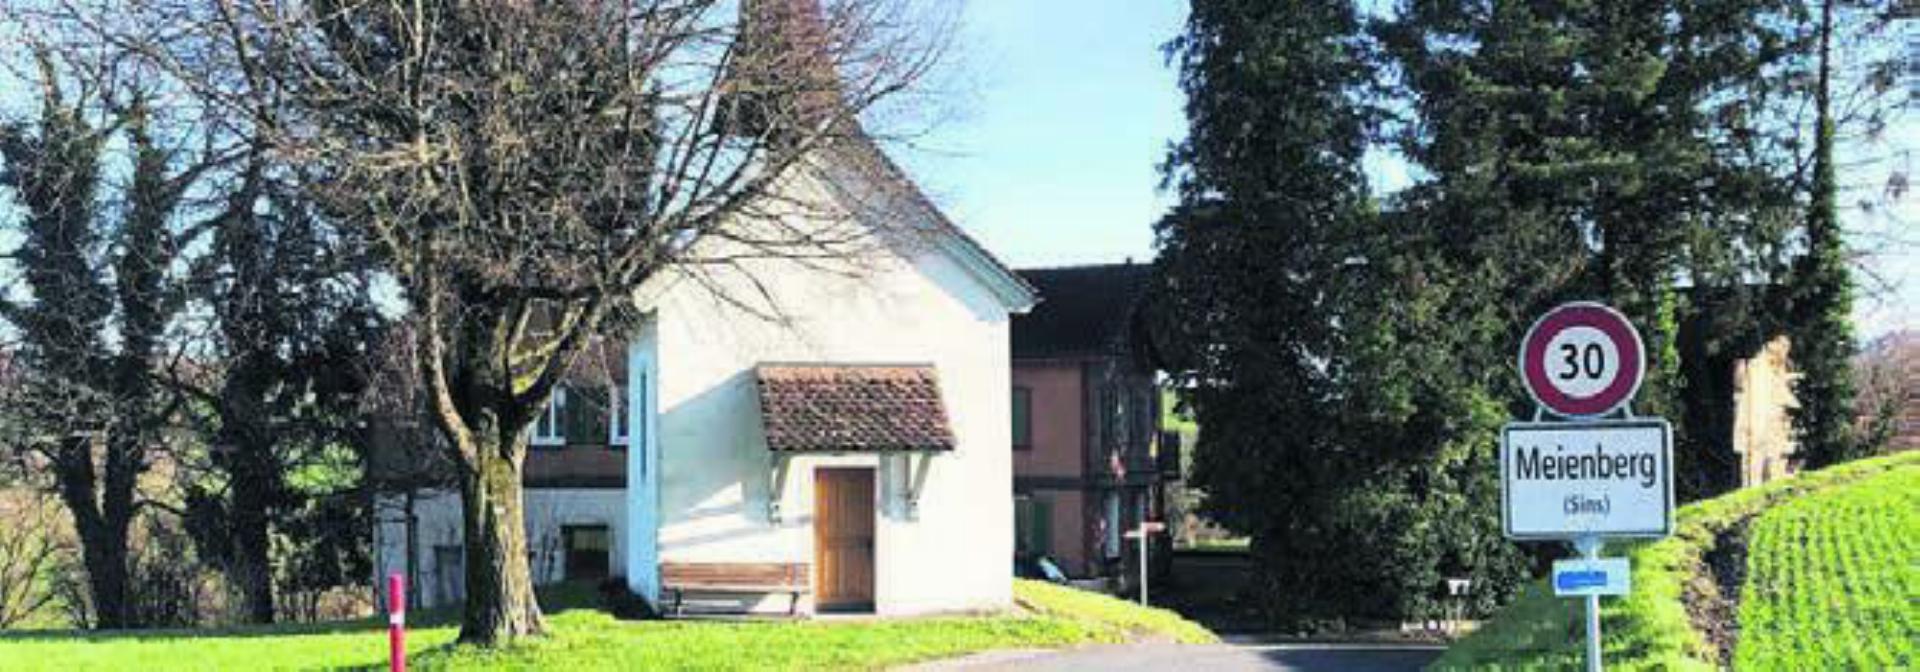 Die Kapelle Meienberg ist eine der Sehenswürdigkeiten am Wegrand der Tour. Bild: zg